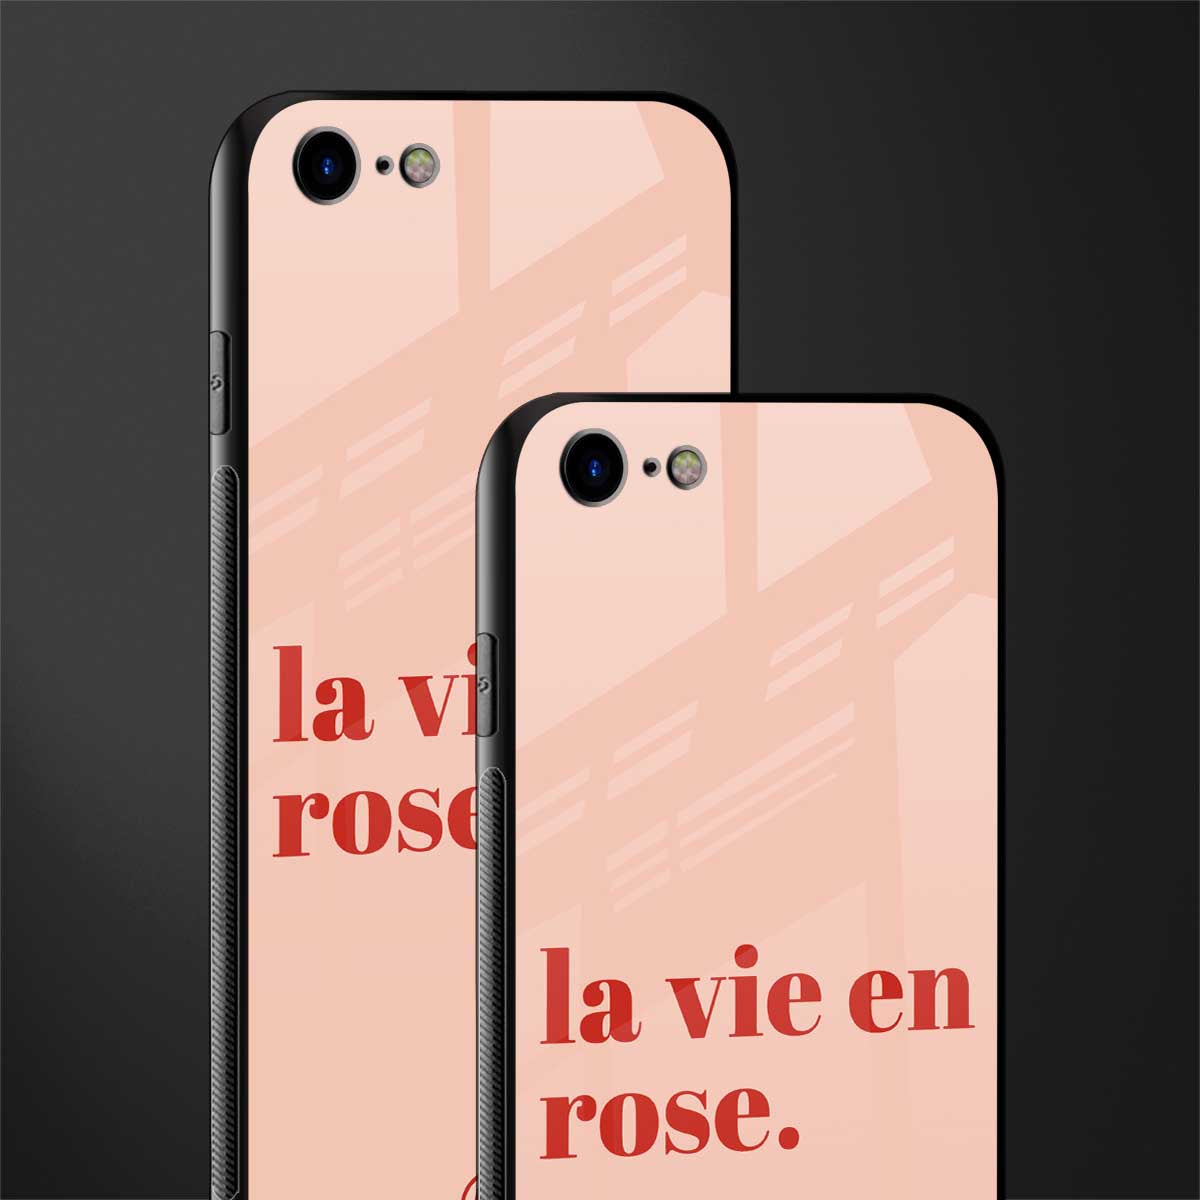 la vie en rose quote glass case for iphone se 2020 image-2